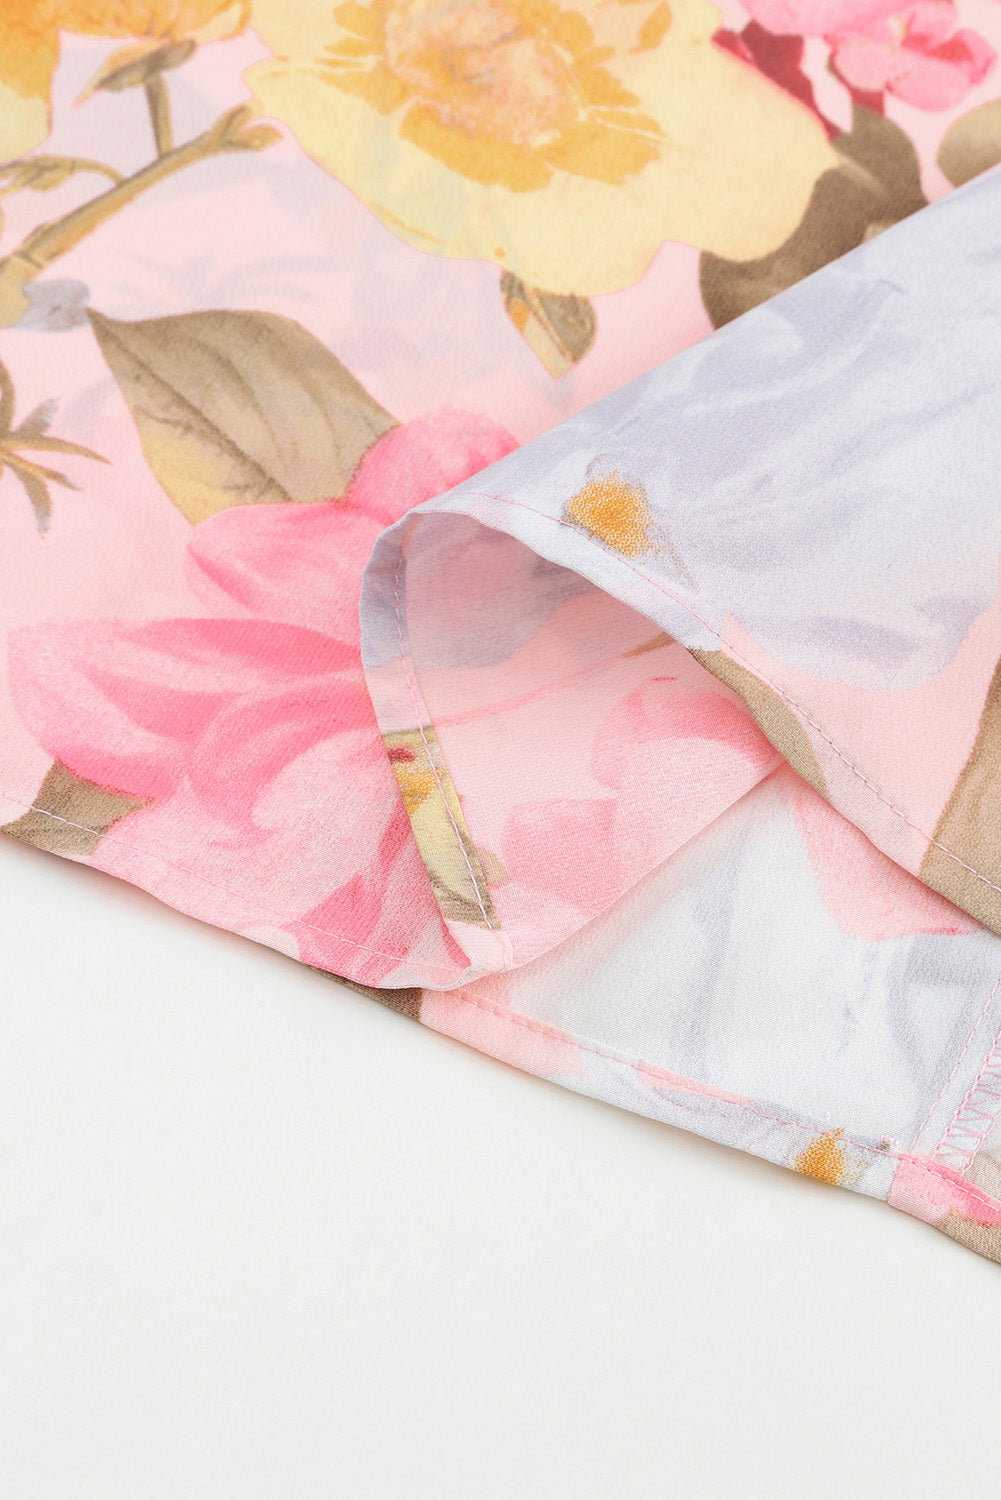 Rožnata ohlapna cvetlična bluza s 3/4 rokavi in ​​manšetami